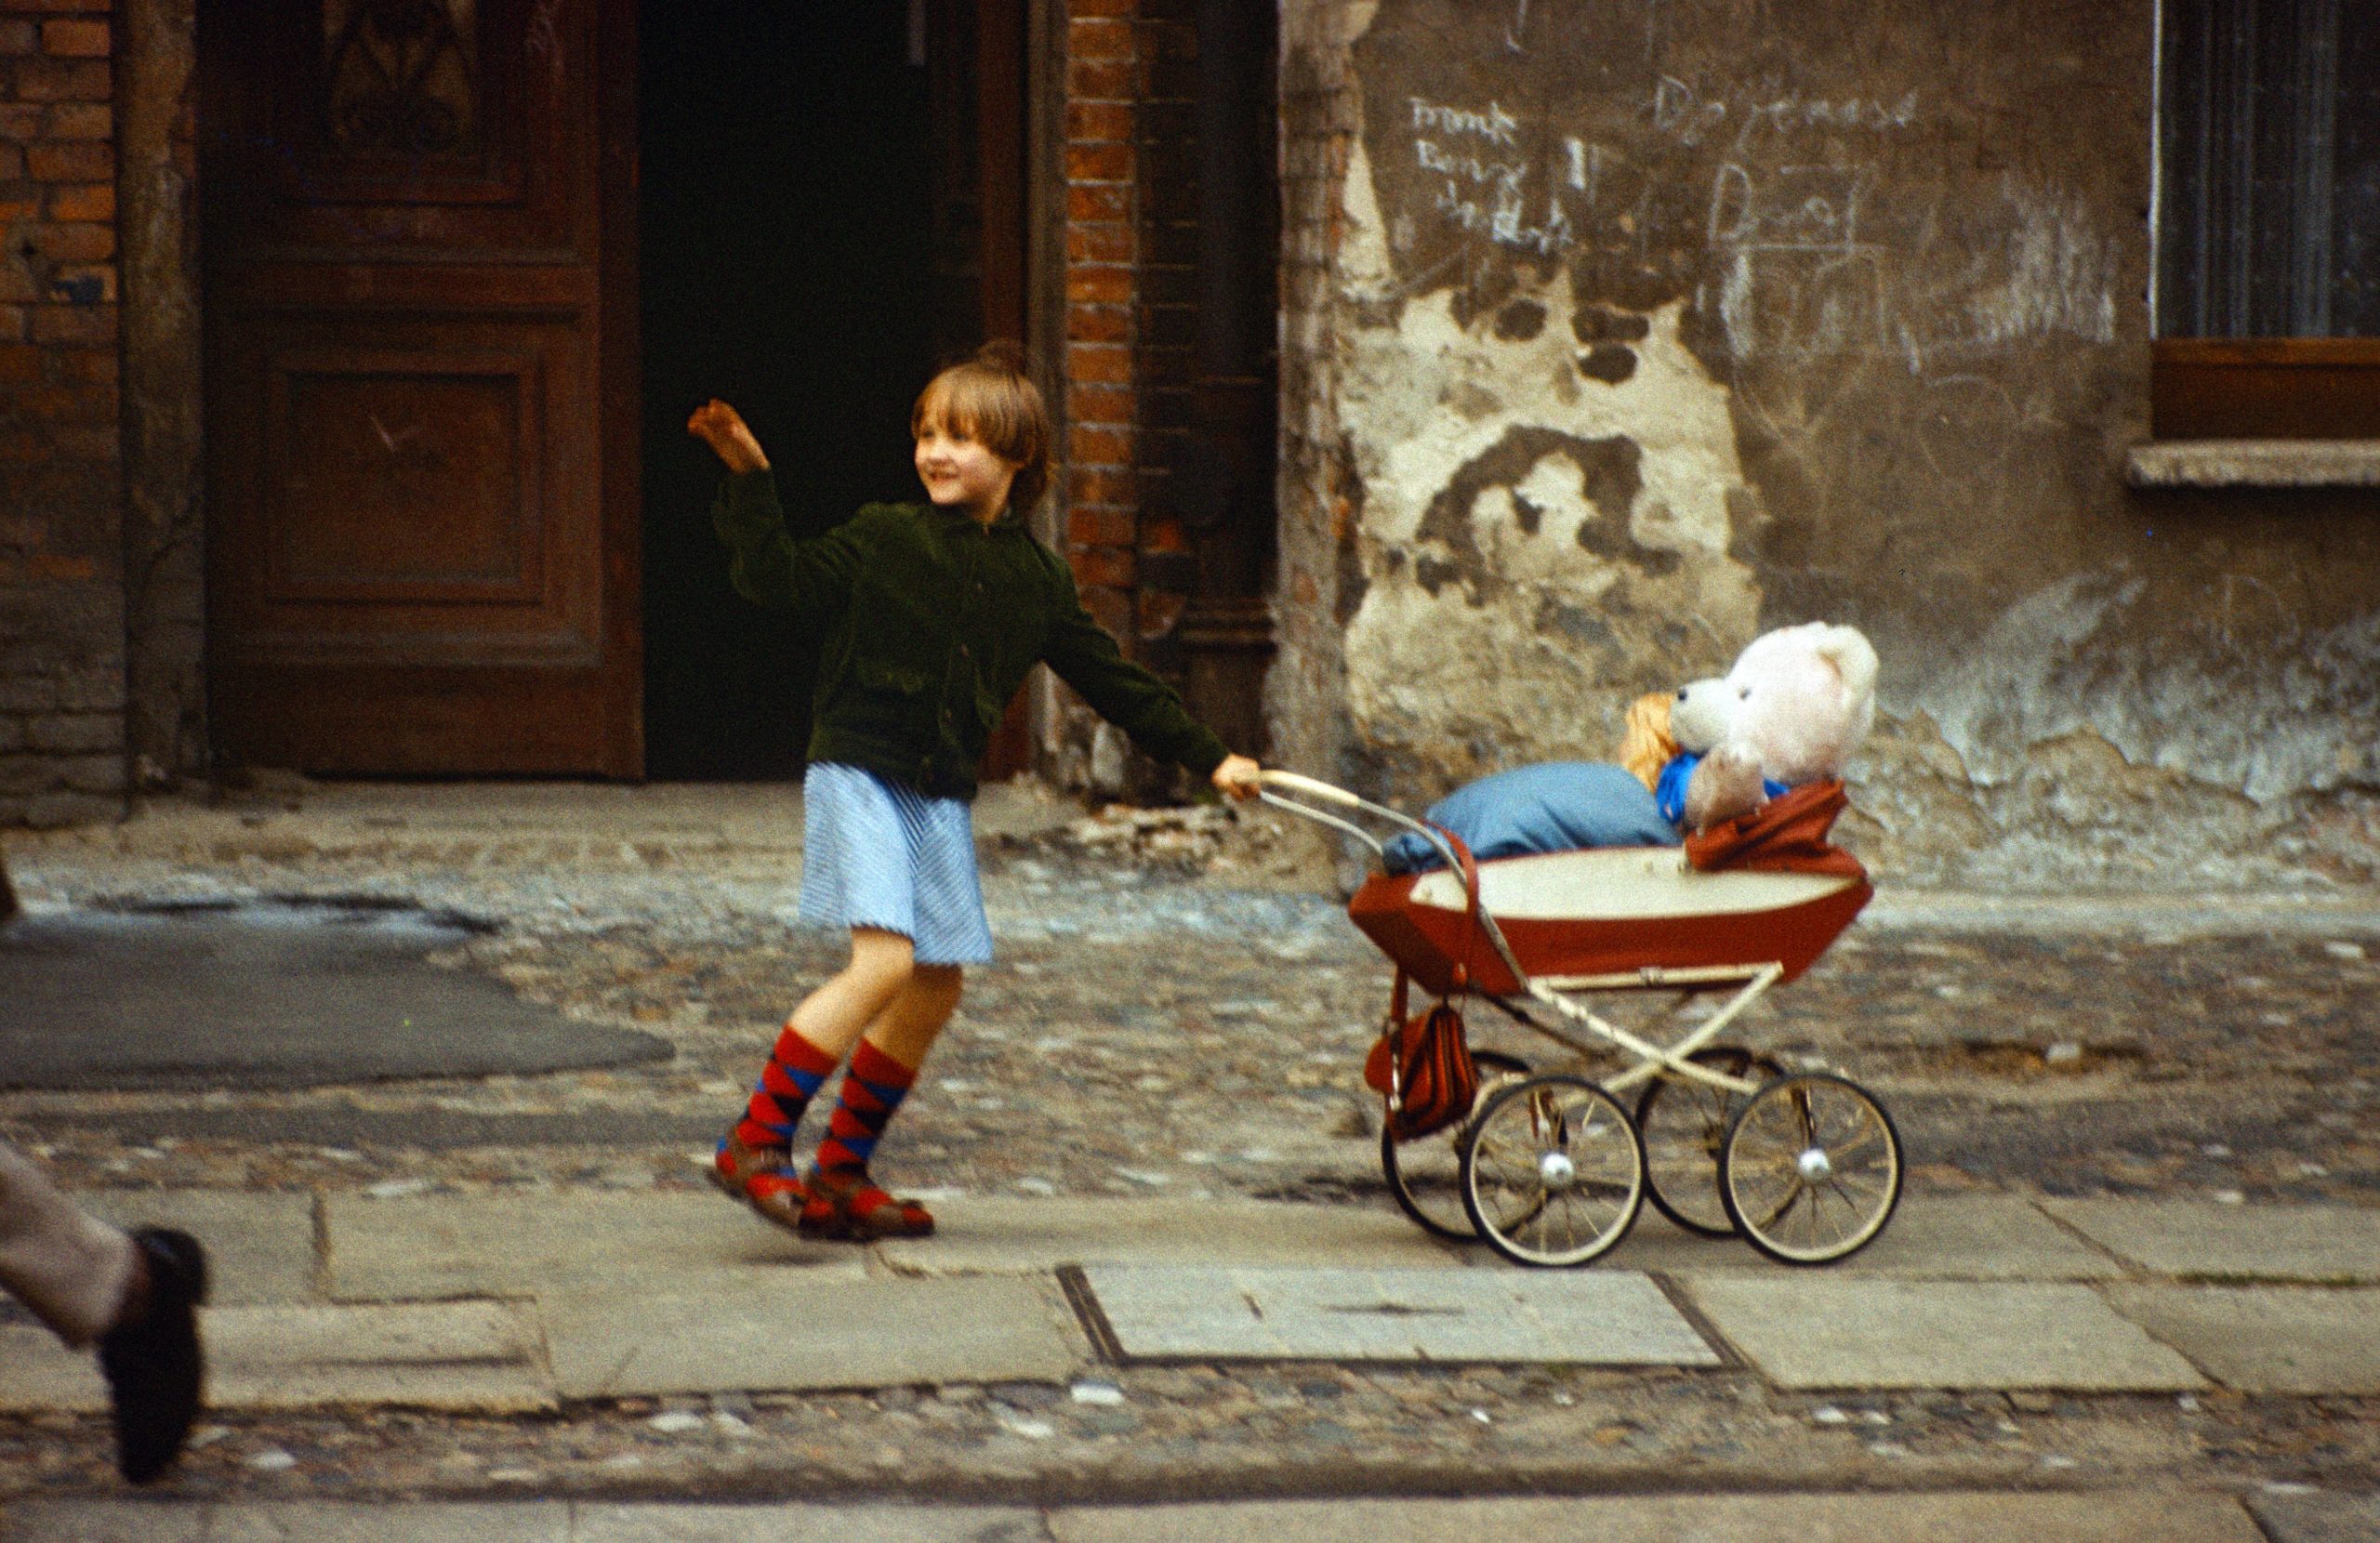 Eine schöne Kindheit in Ost-Berlin... Mädchen schiebt ihren Teddybär in einem Puppenwagen. Foto: Imago/Frank Sorge